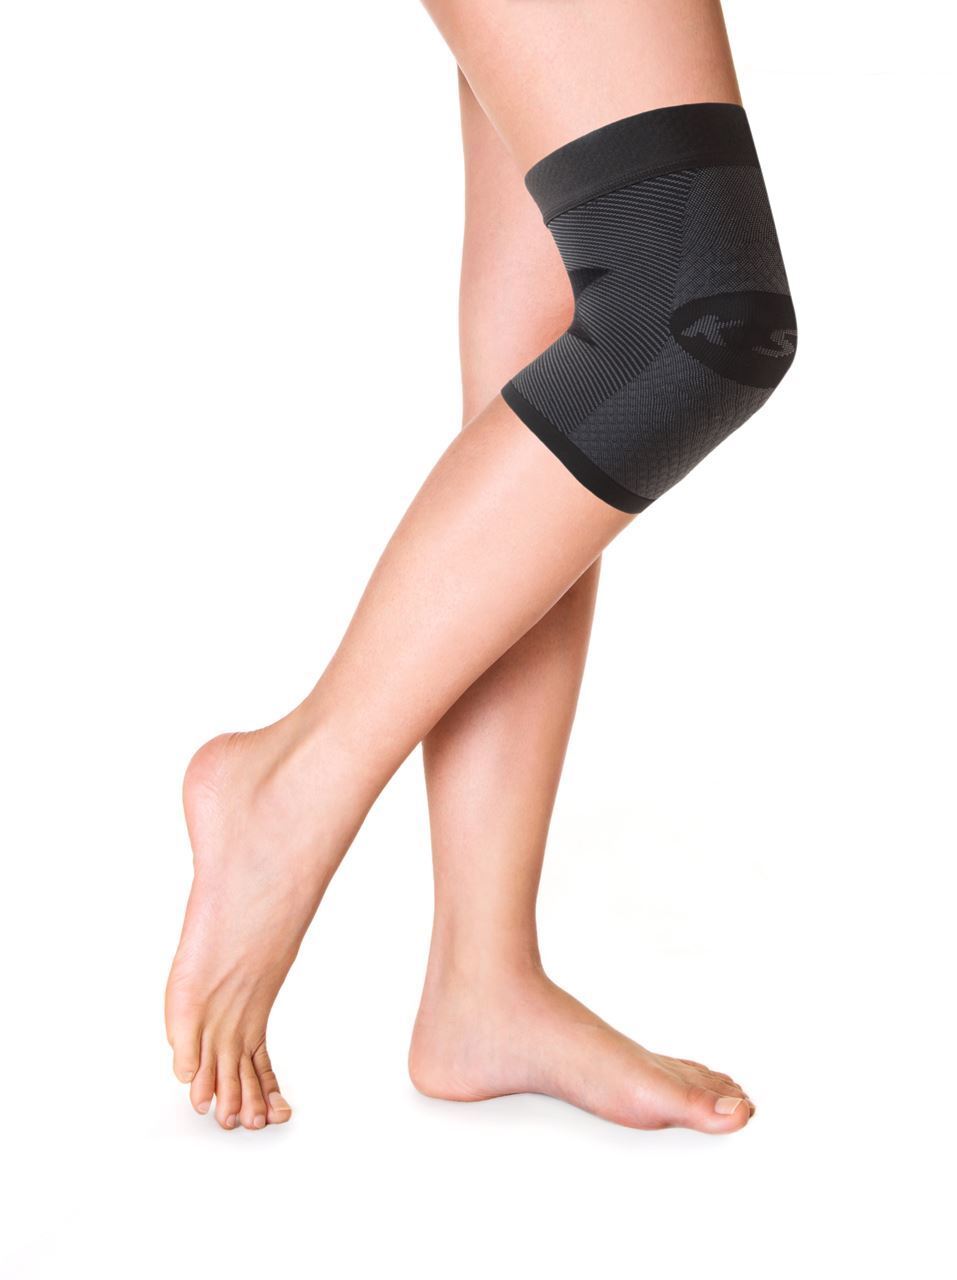 Orthosleeve KS 7 knee sleeve